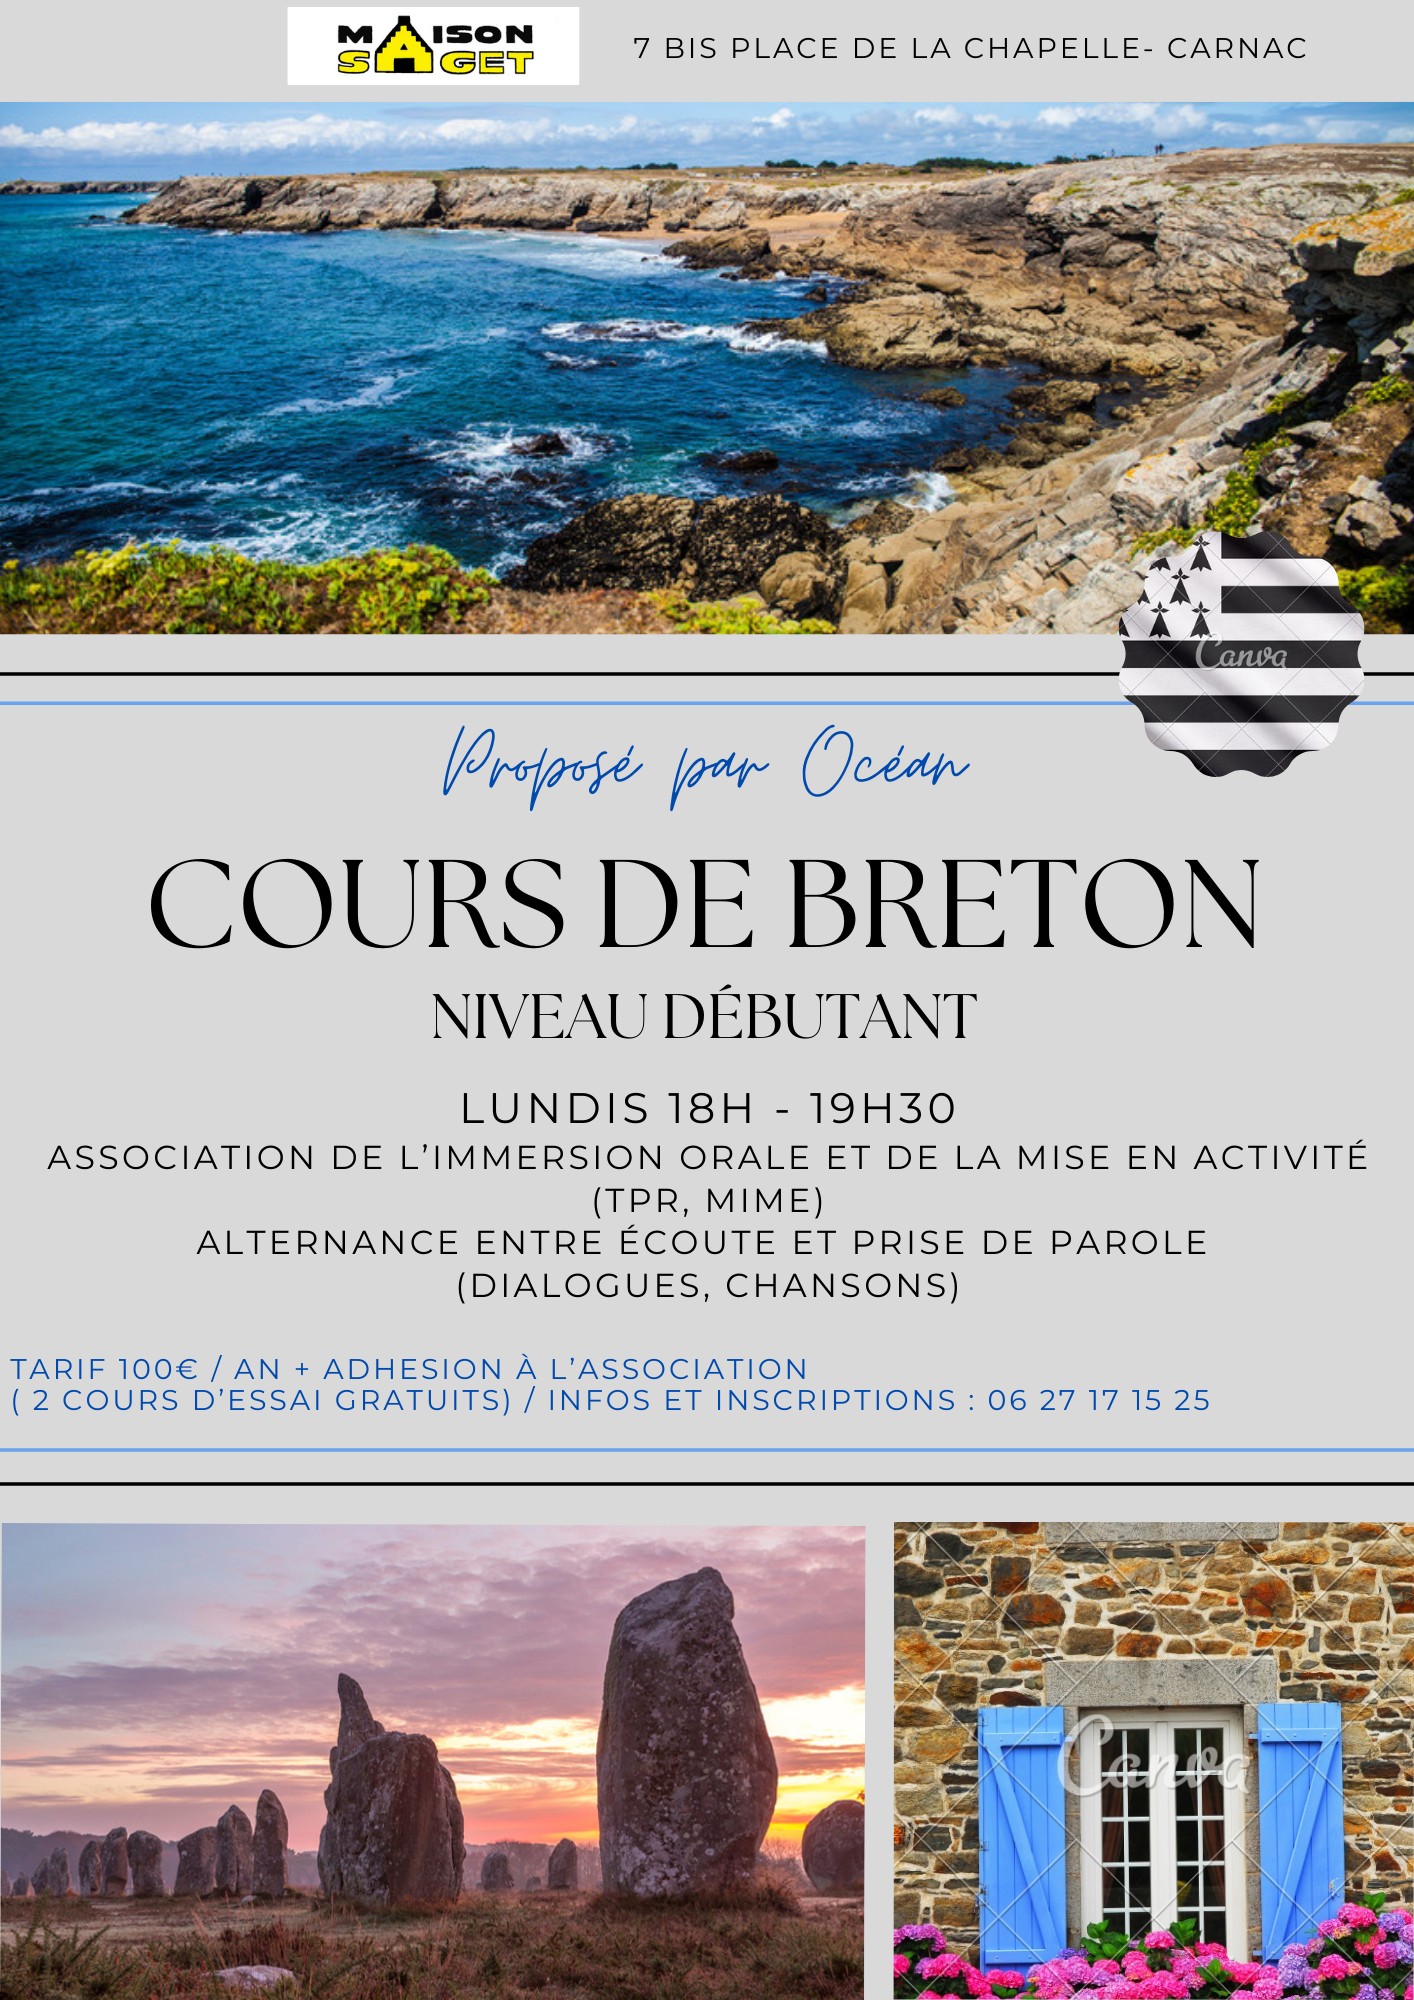 COURS de breton